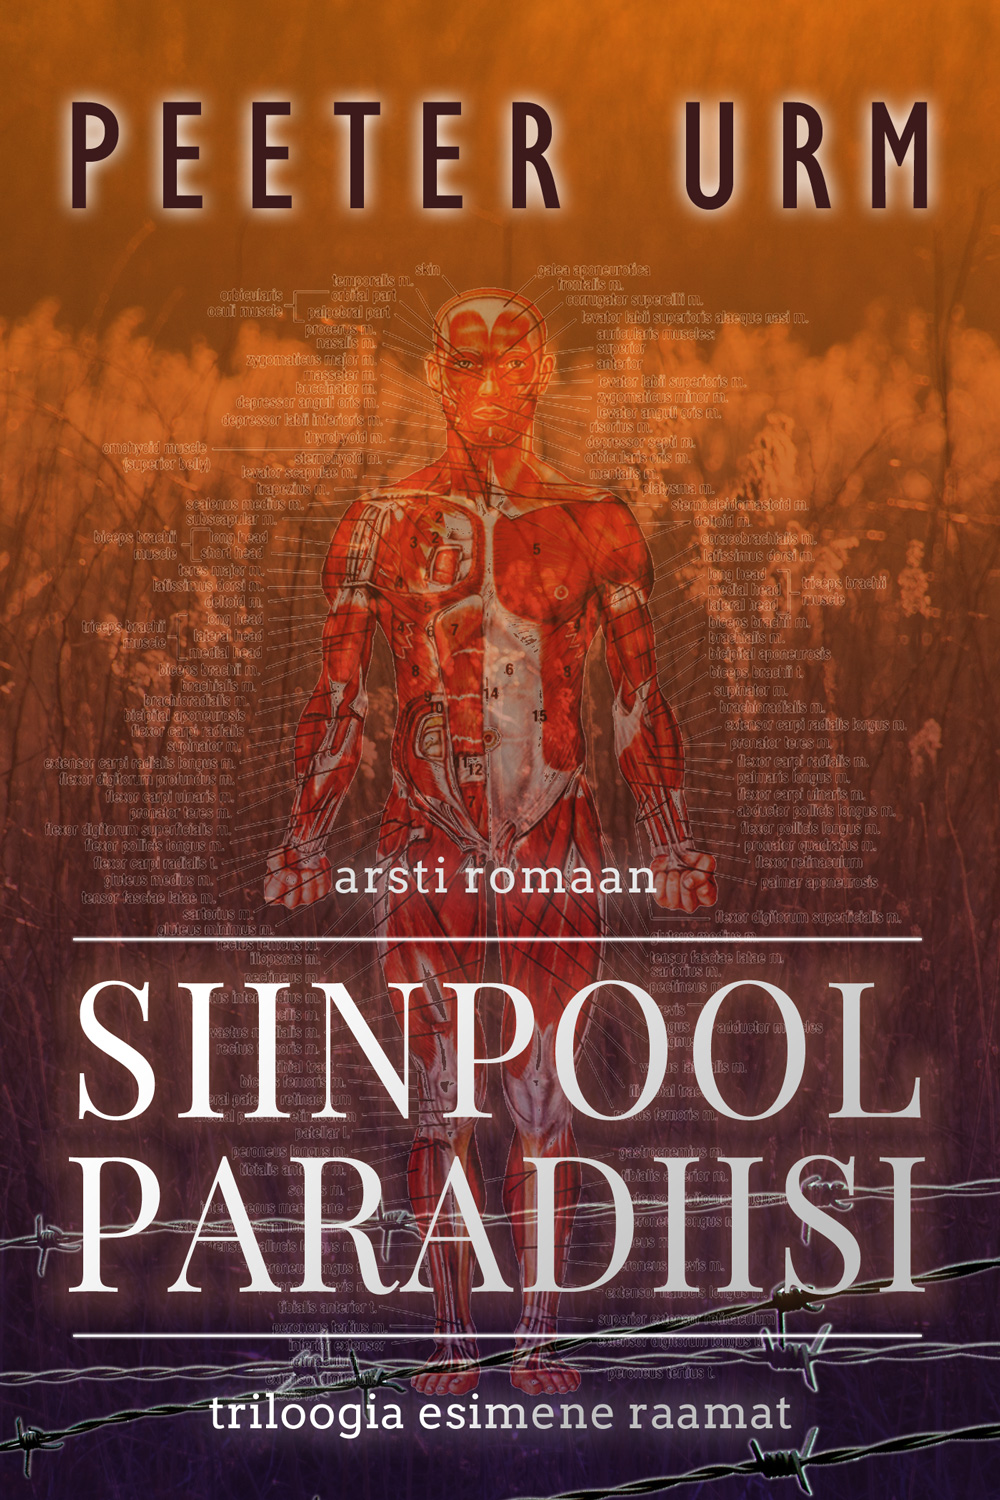 Книга Siinpool paradiisi из серии , созданная Peeter Urm, может относится к жанру Литература 20 века. Стоимость электронной книги Siinpool paradiisi с идентификатором 21187764 составляет 735.91 руб.